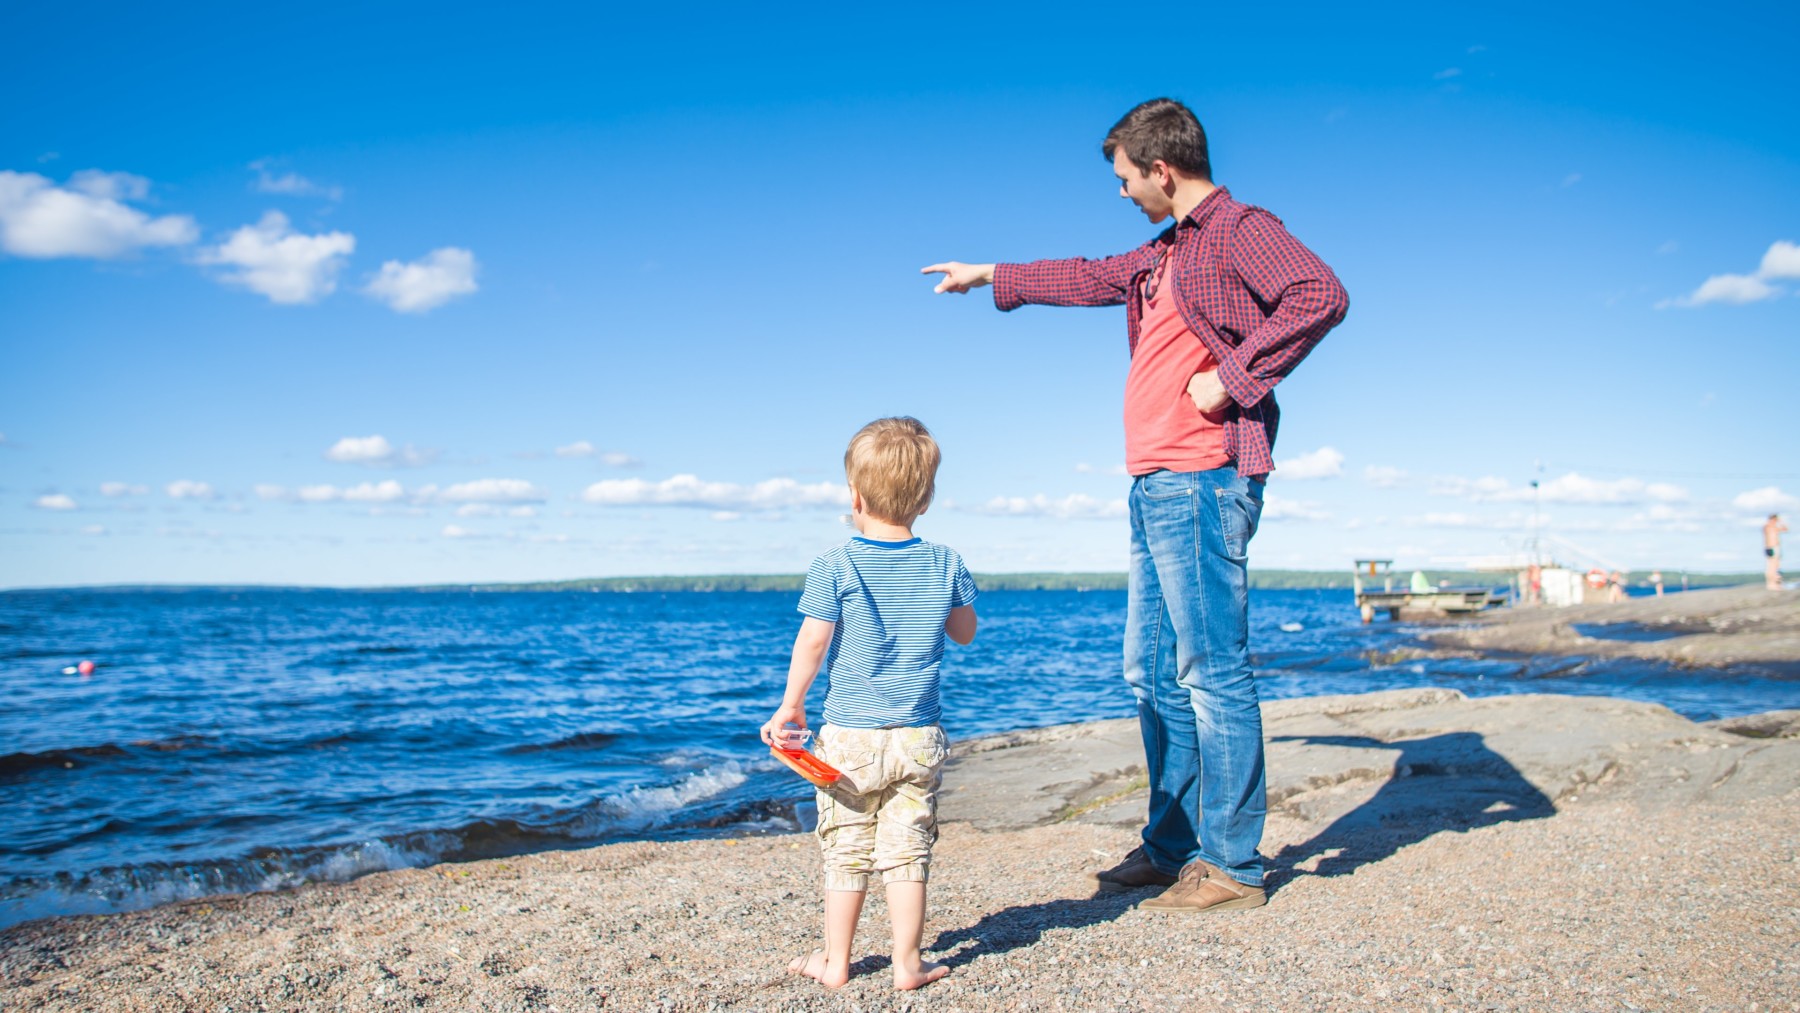 Au bord d’un lac, un homme désigne du doigt un point quelconque situé à l’horizon tandis qu’un enfant regarde dans la même direction.